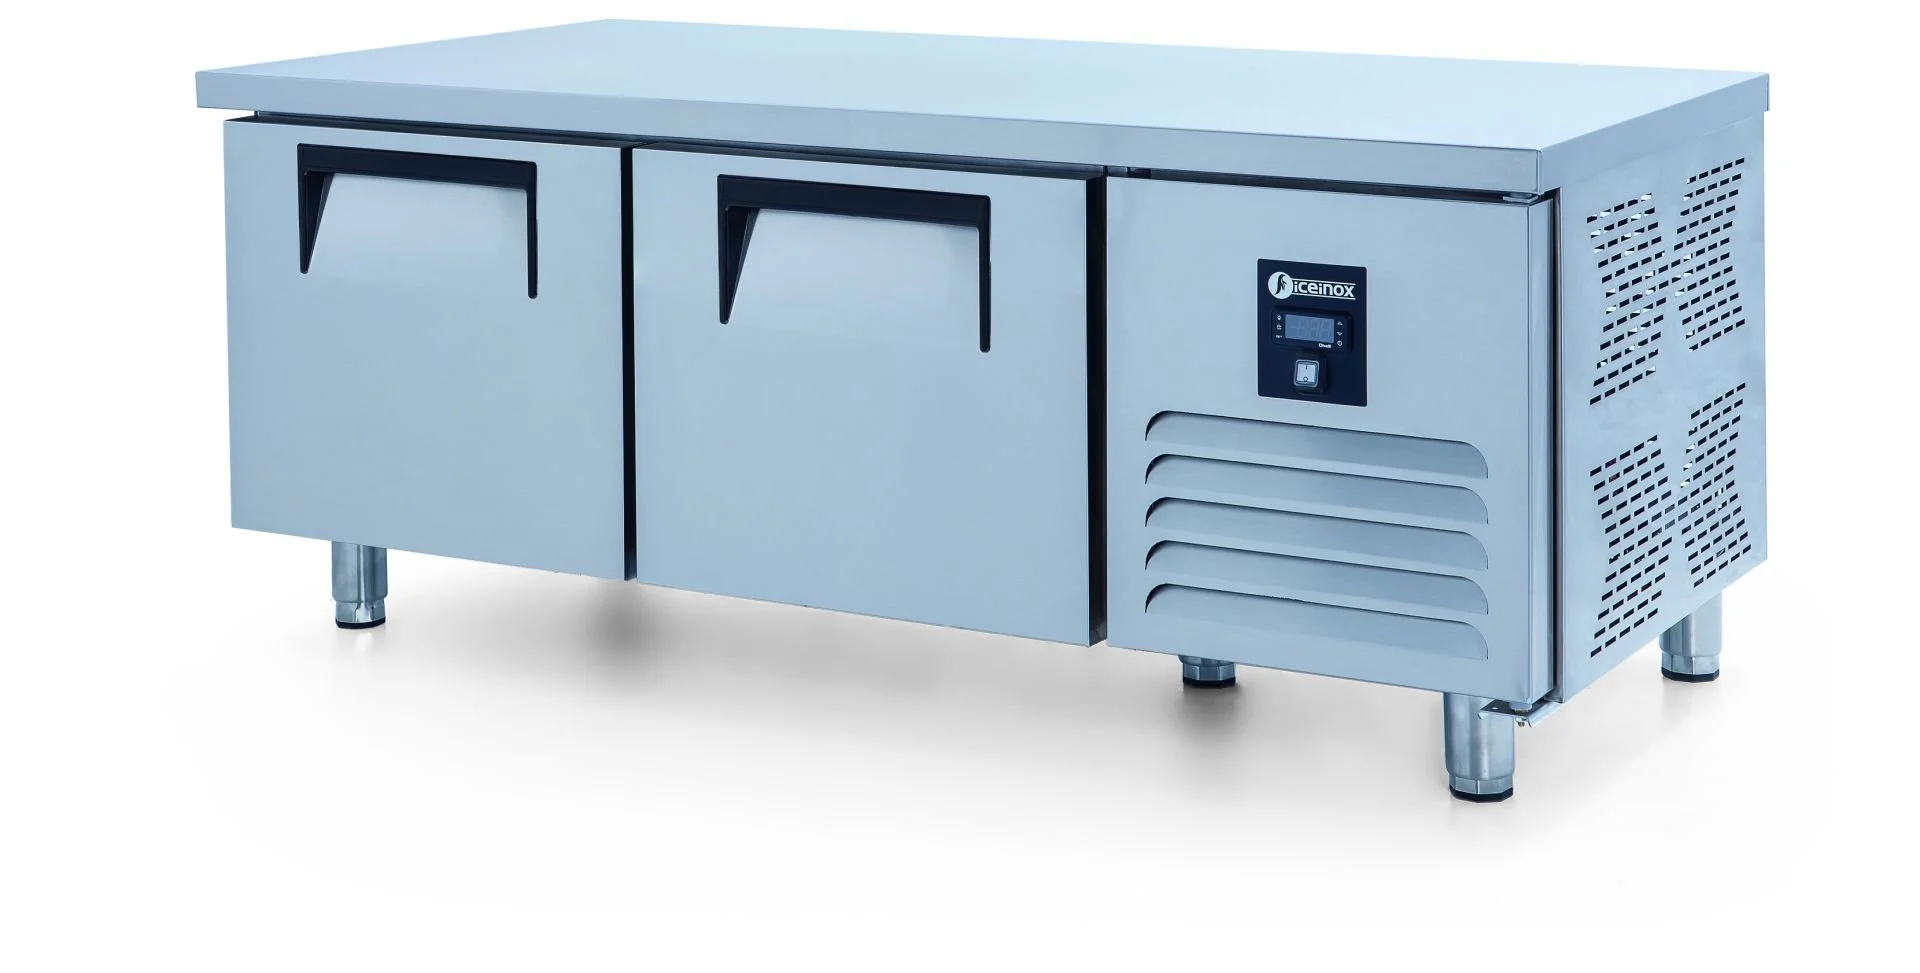 ICEINOX - Iceinox UTS 190 CR Pişirici Altı Buzdolabı, 2 Kapılı, 190 L